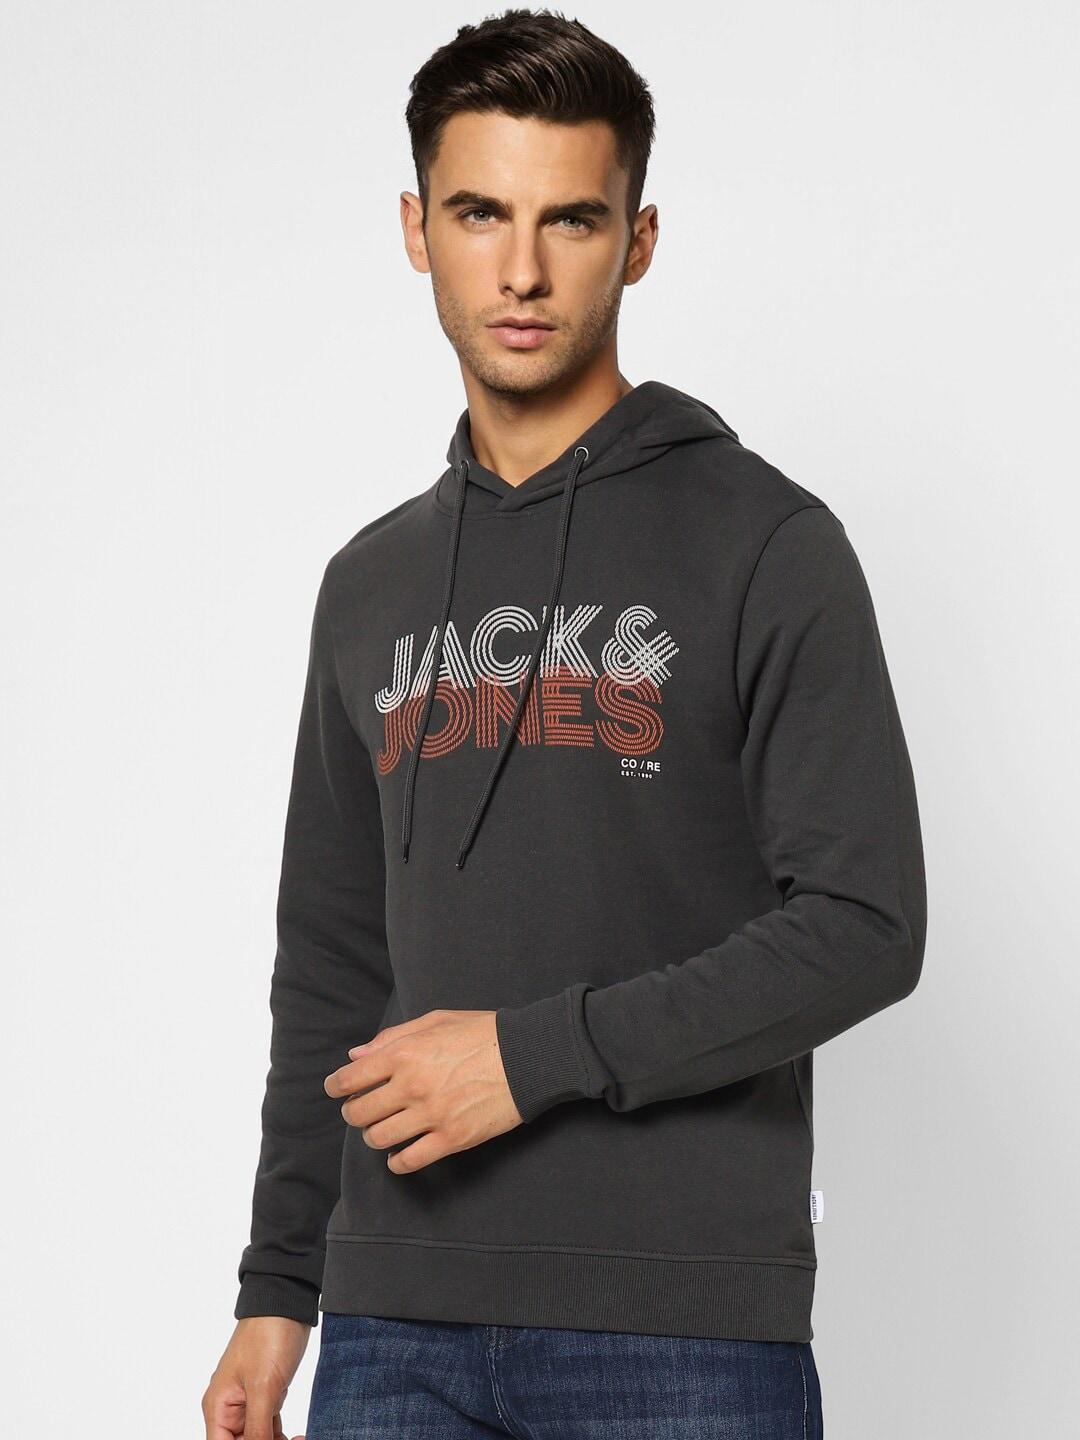 Jack & Jones Men Black Printed Hooded Sweatshirt